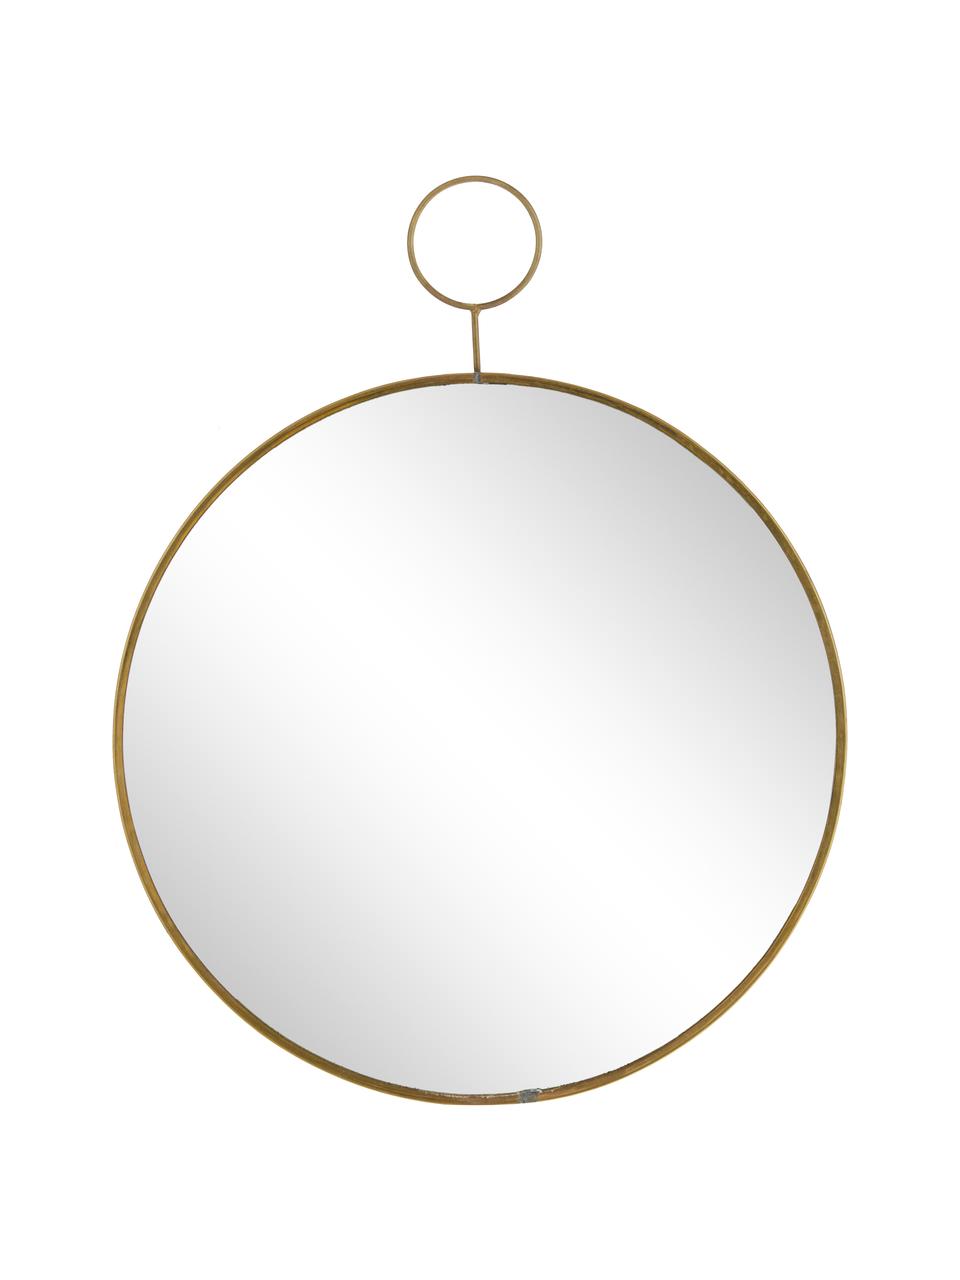 Okrągłe lustro ścienne Loop, Krawędź: odcienie mosiądzu Lustro: szkło lustrzane, Ø 32 cm